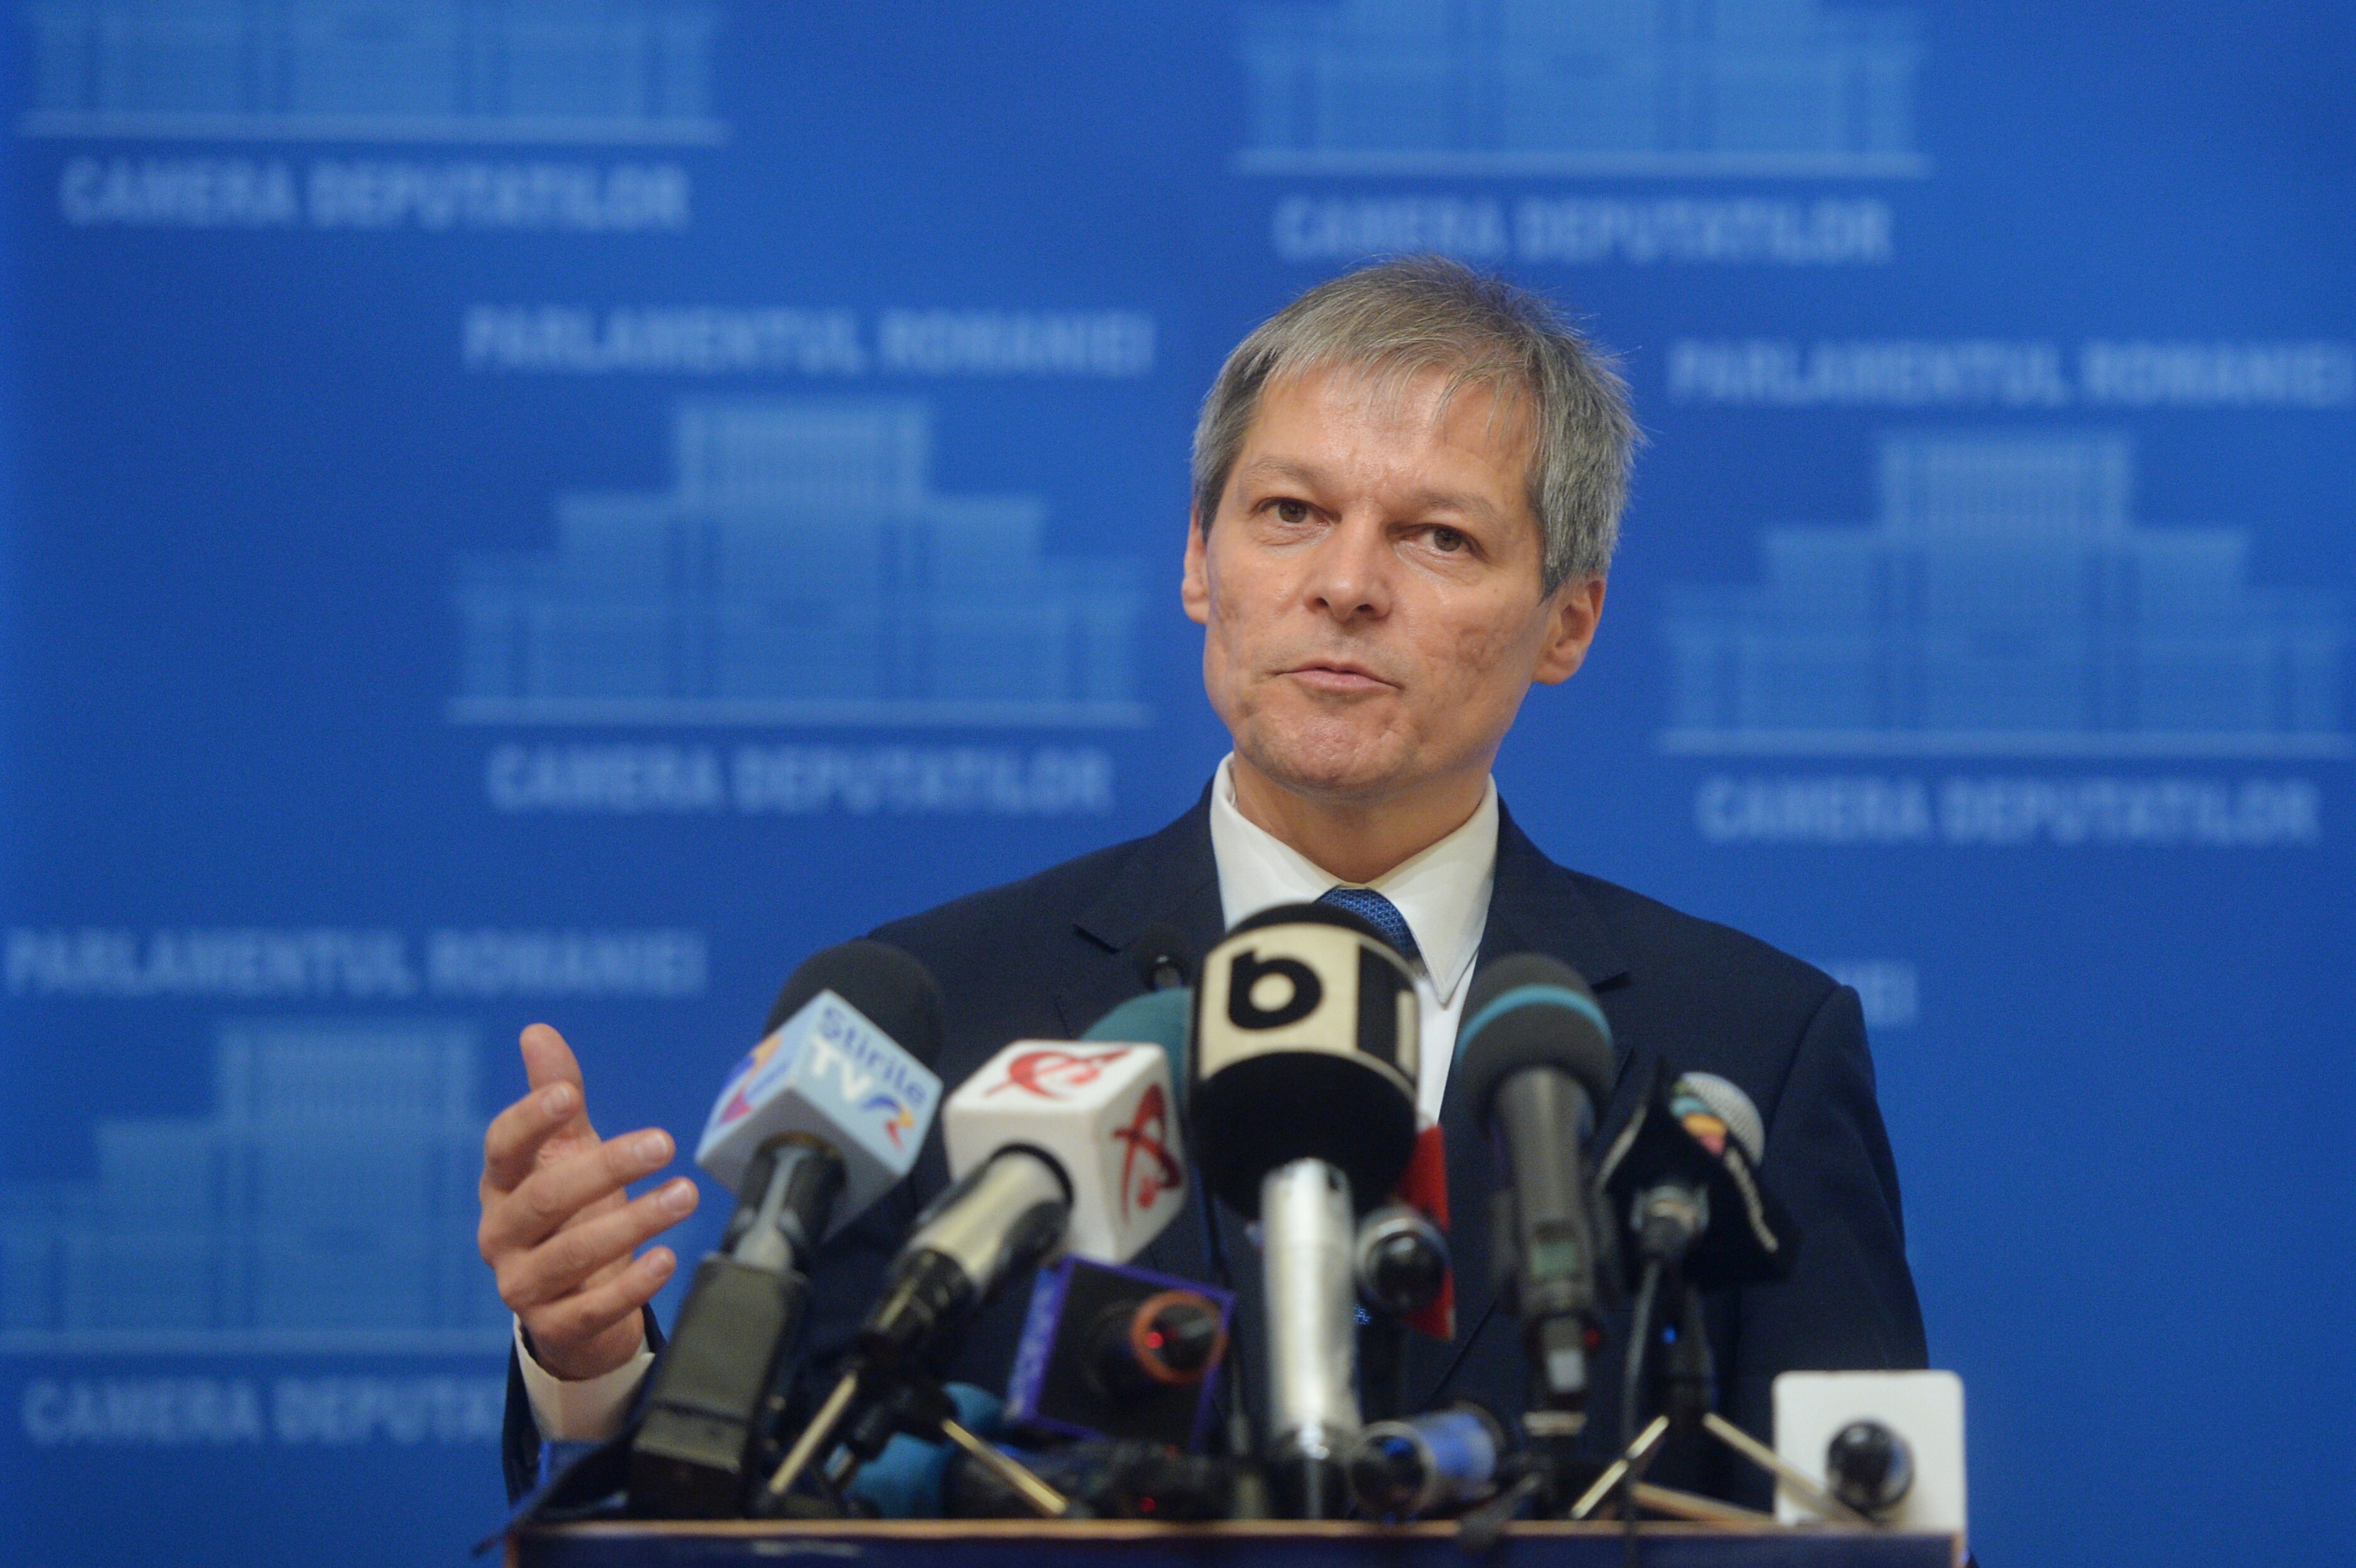 Avem un nou guvern. Cabinetul Cioloş a primit votul de încredere al Parlamentului